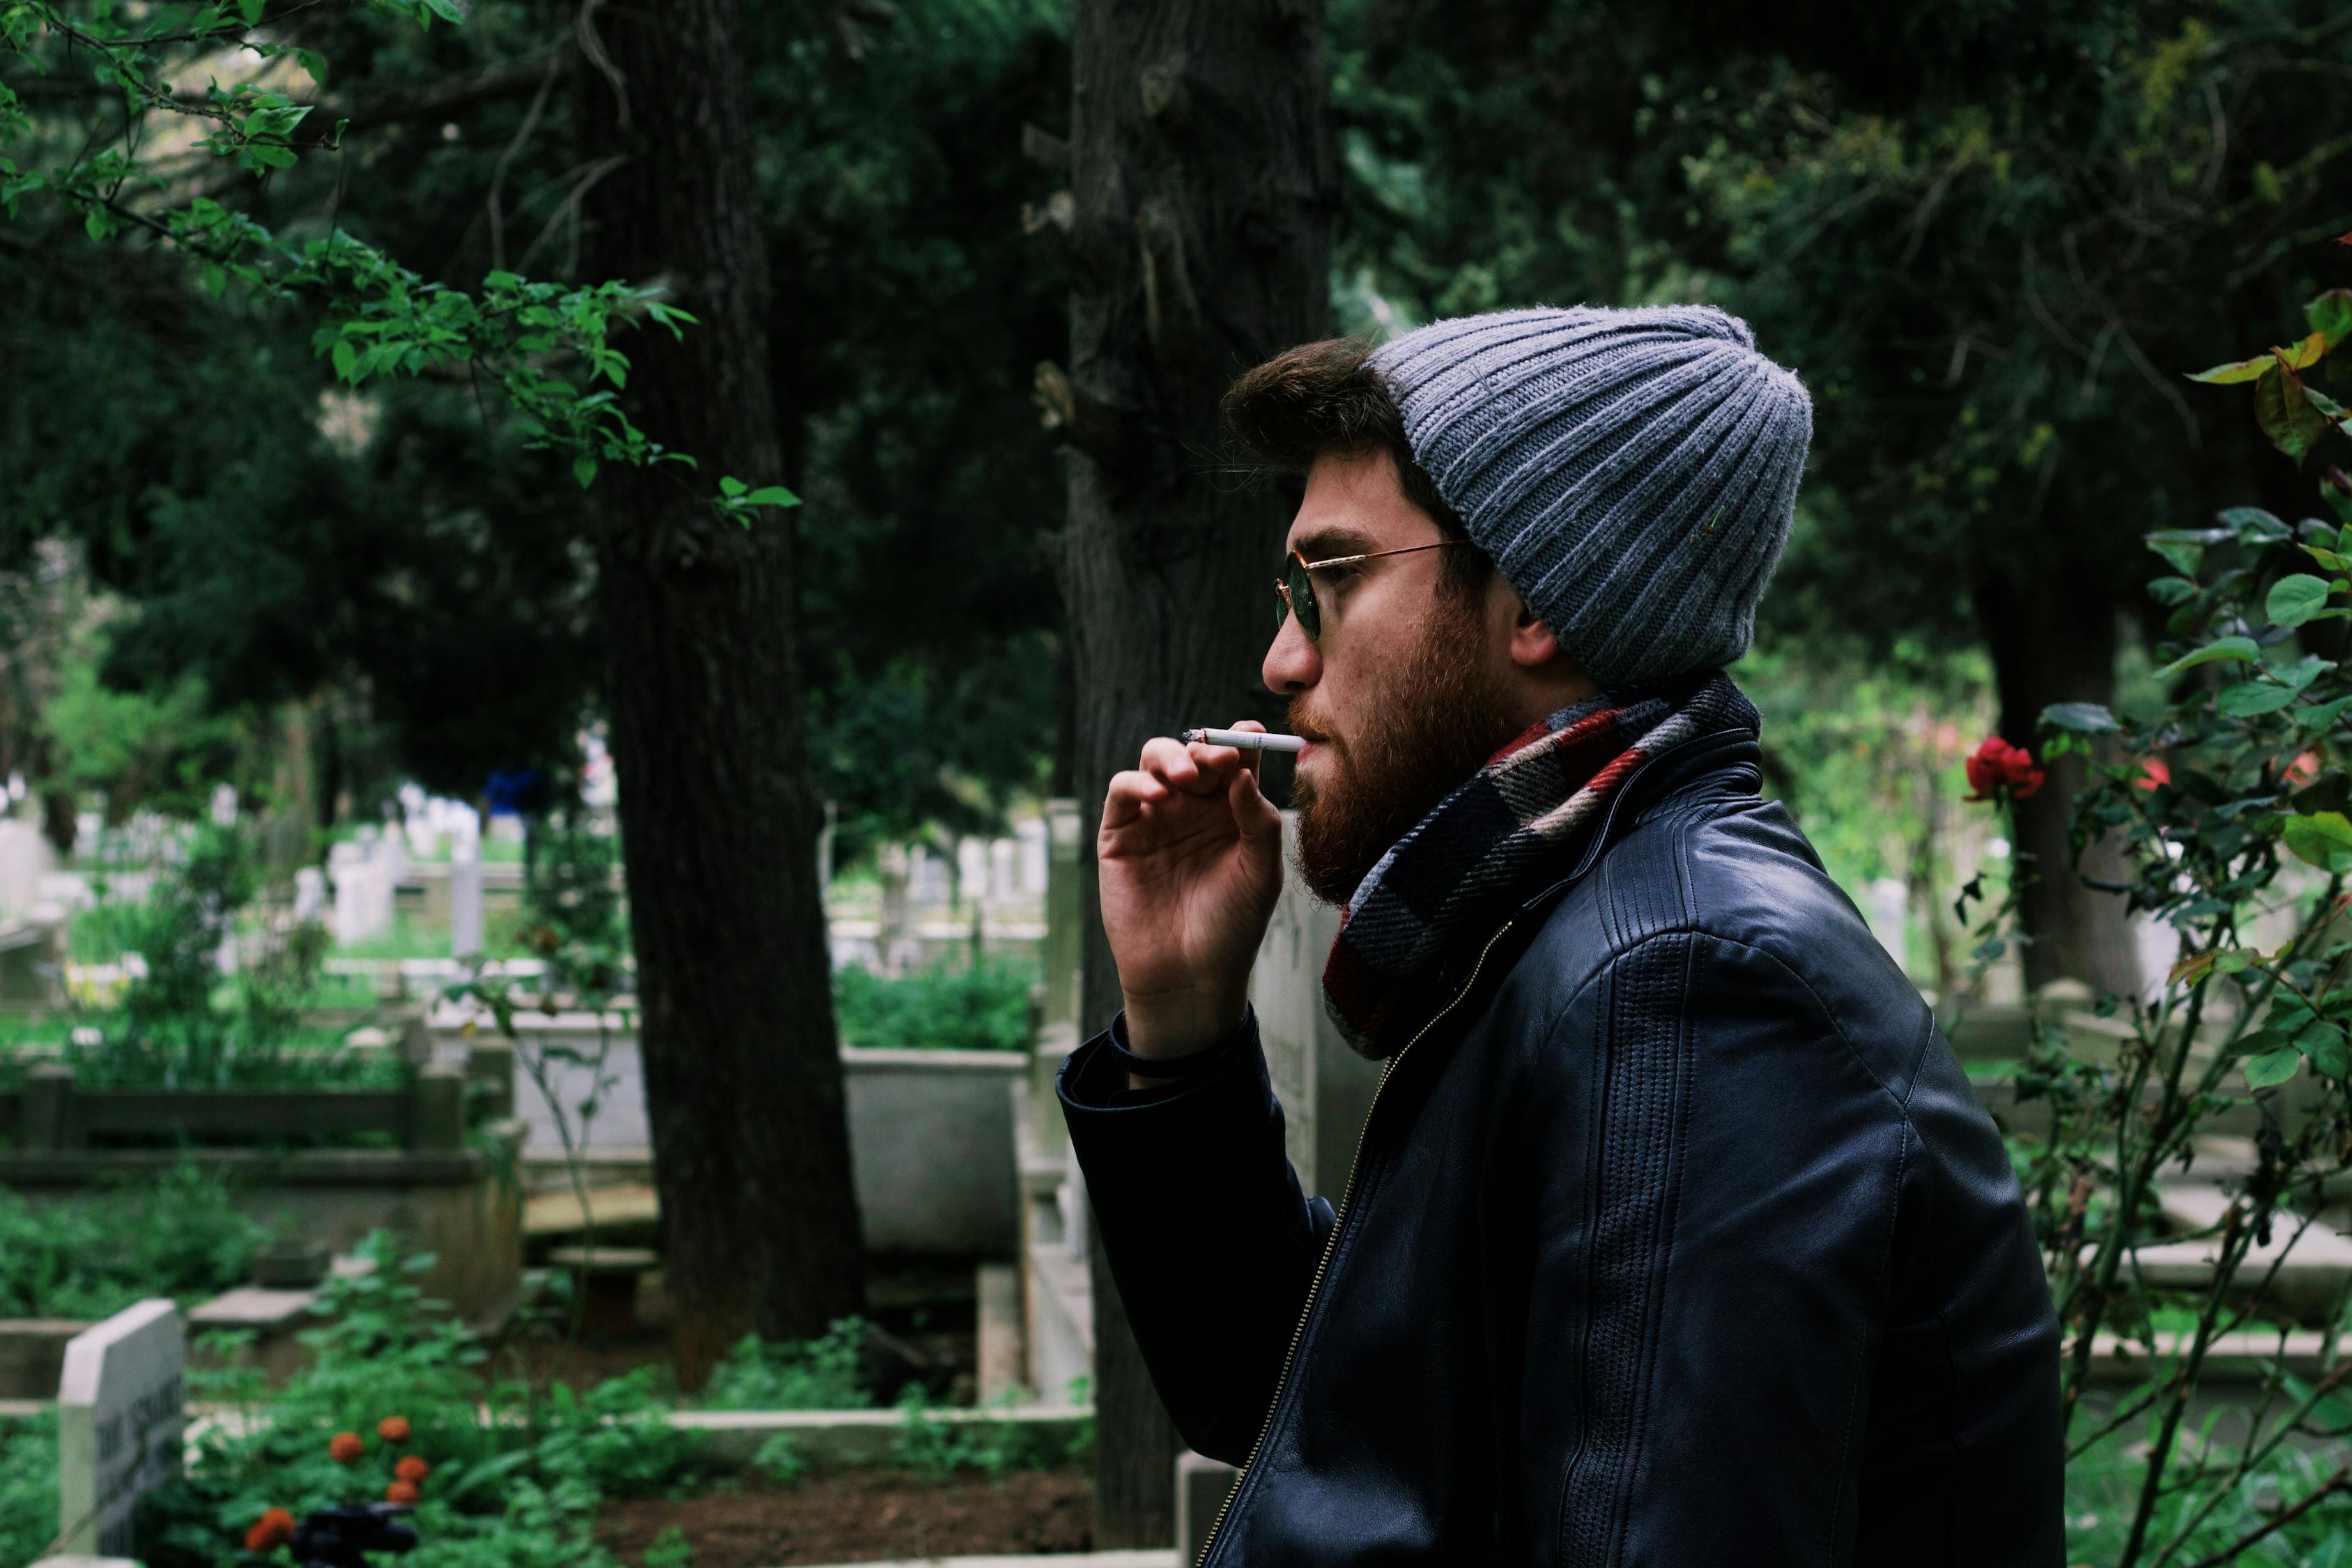 大叔抽烟的图片,成熟男人抽烟背影图片(3) - 伤感说说吧